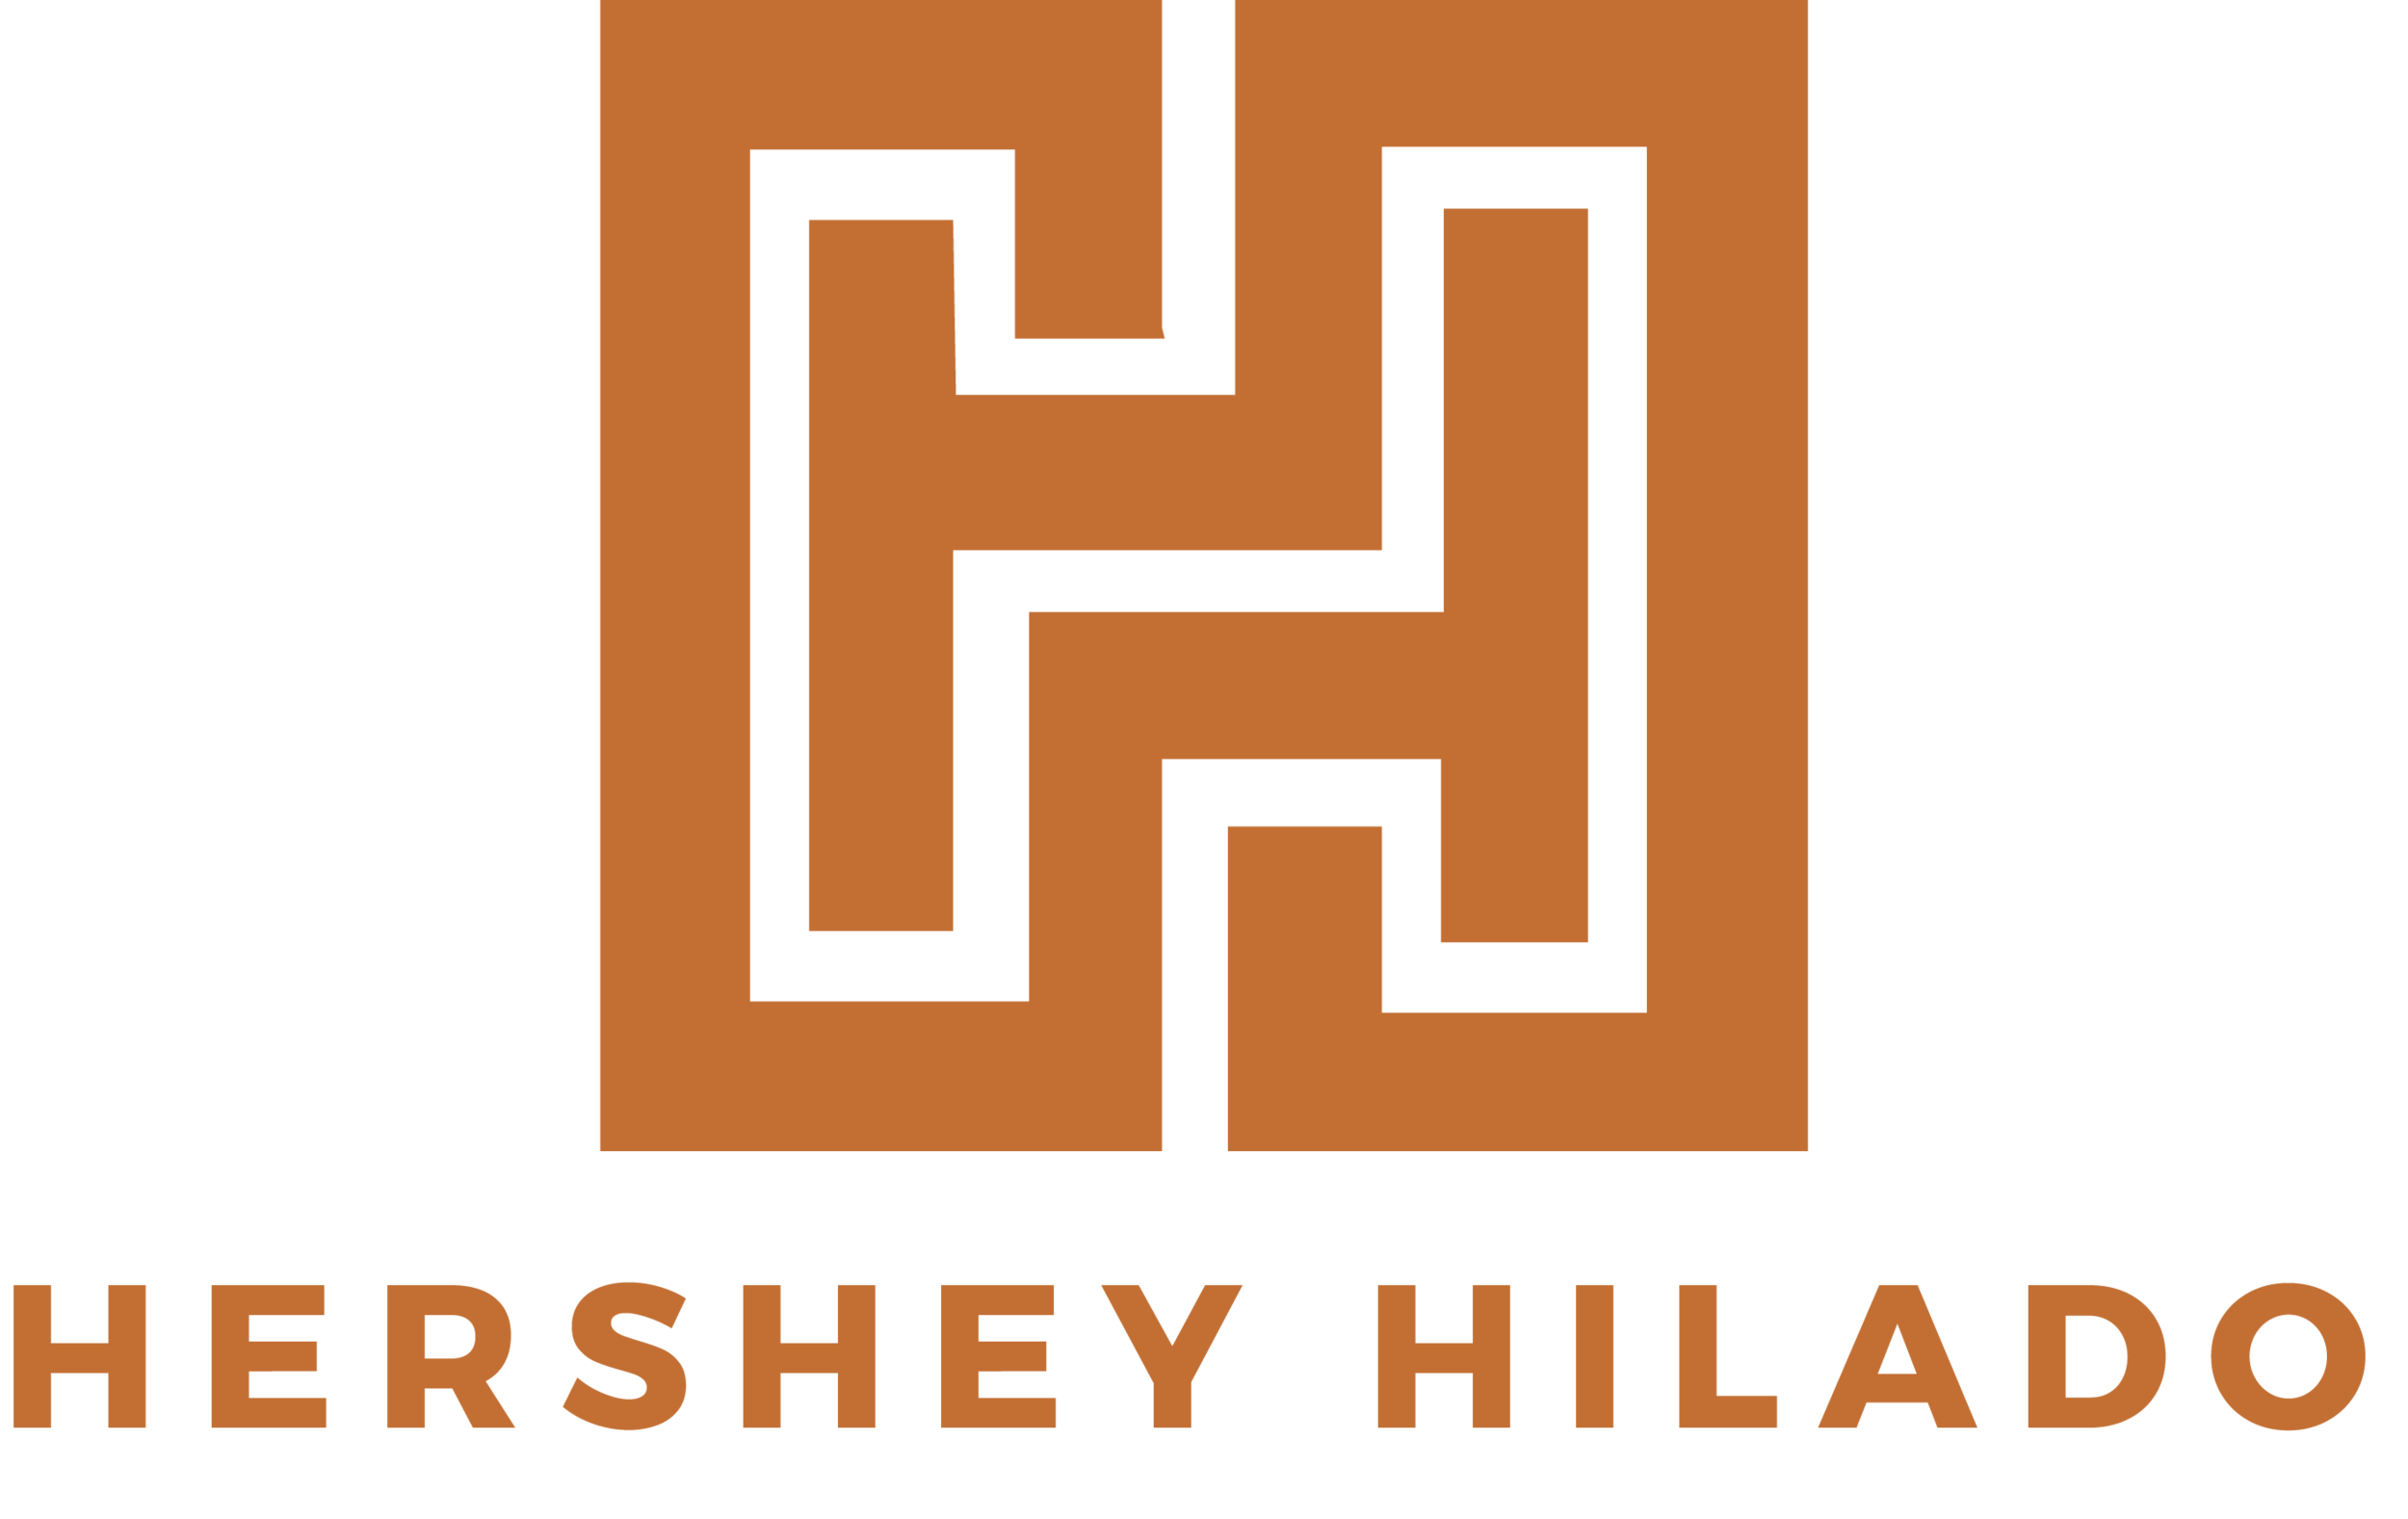 Hershey Hilado